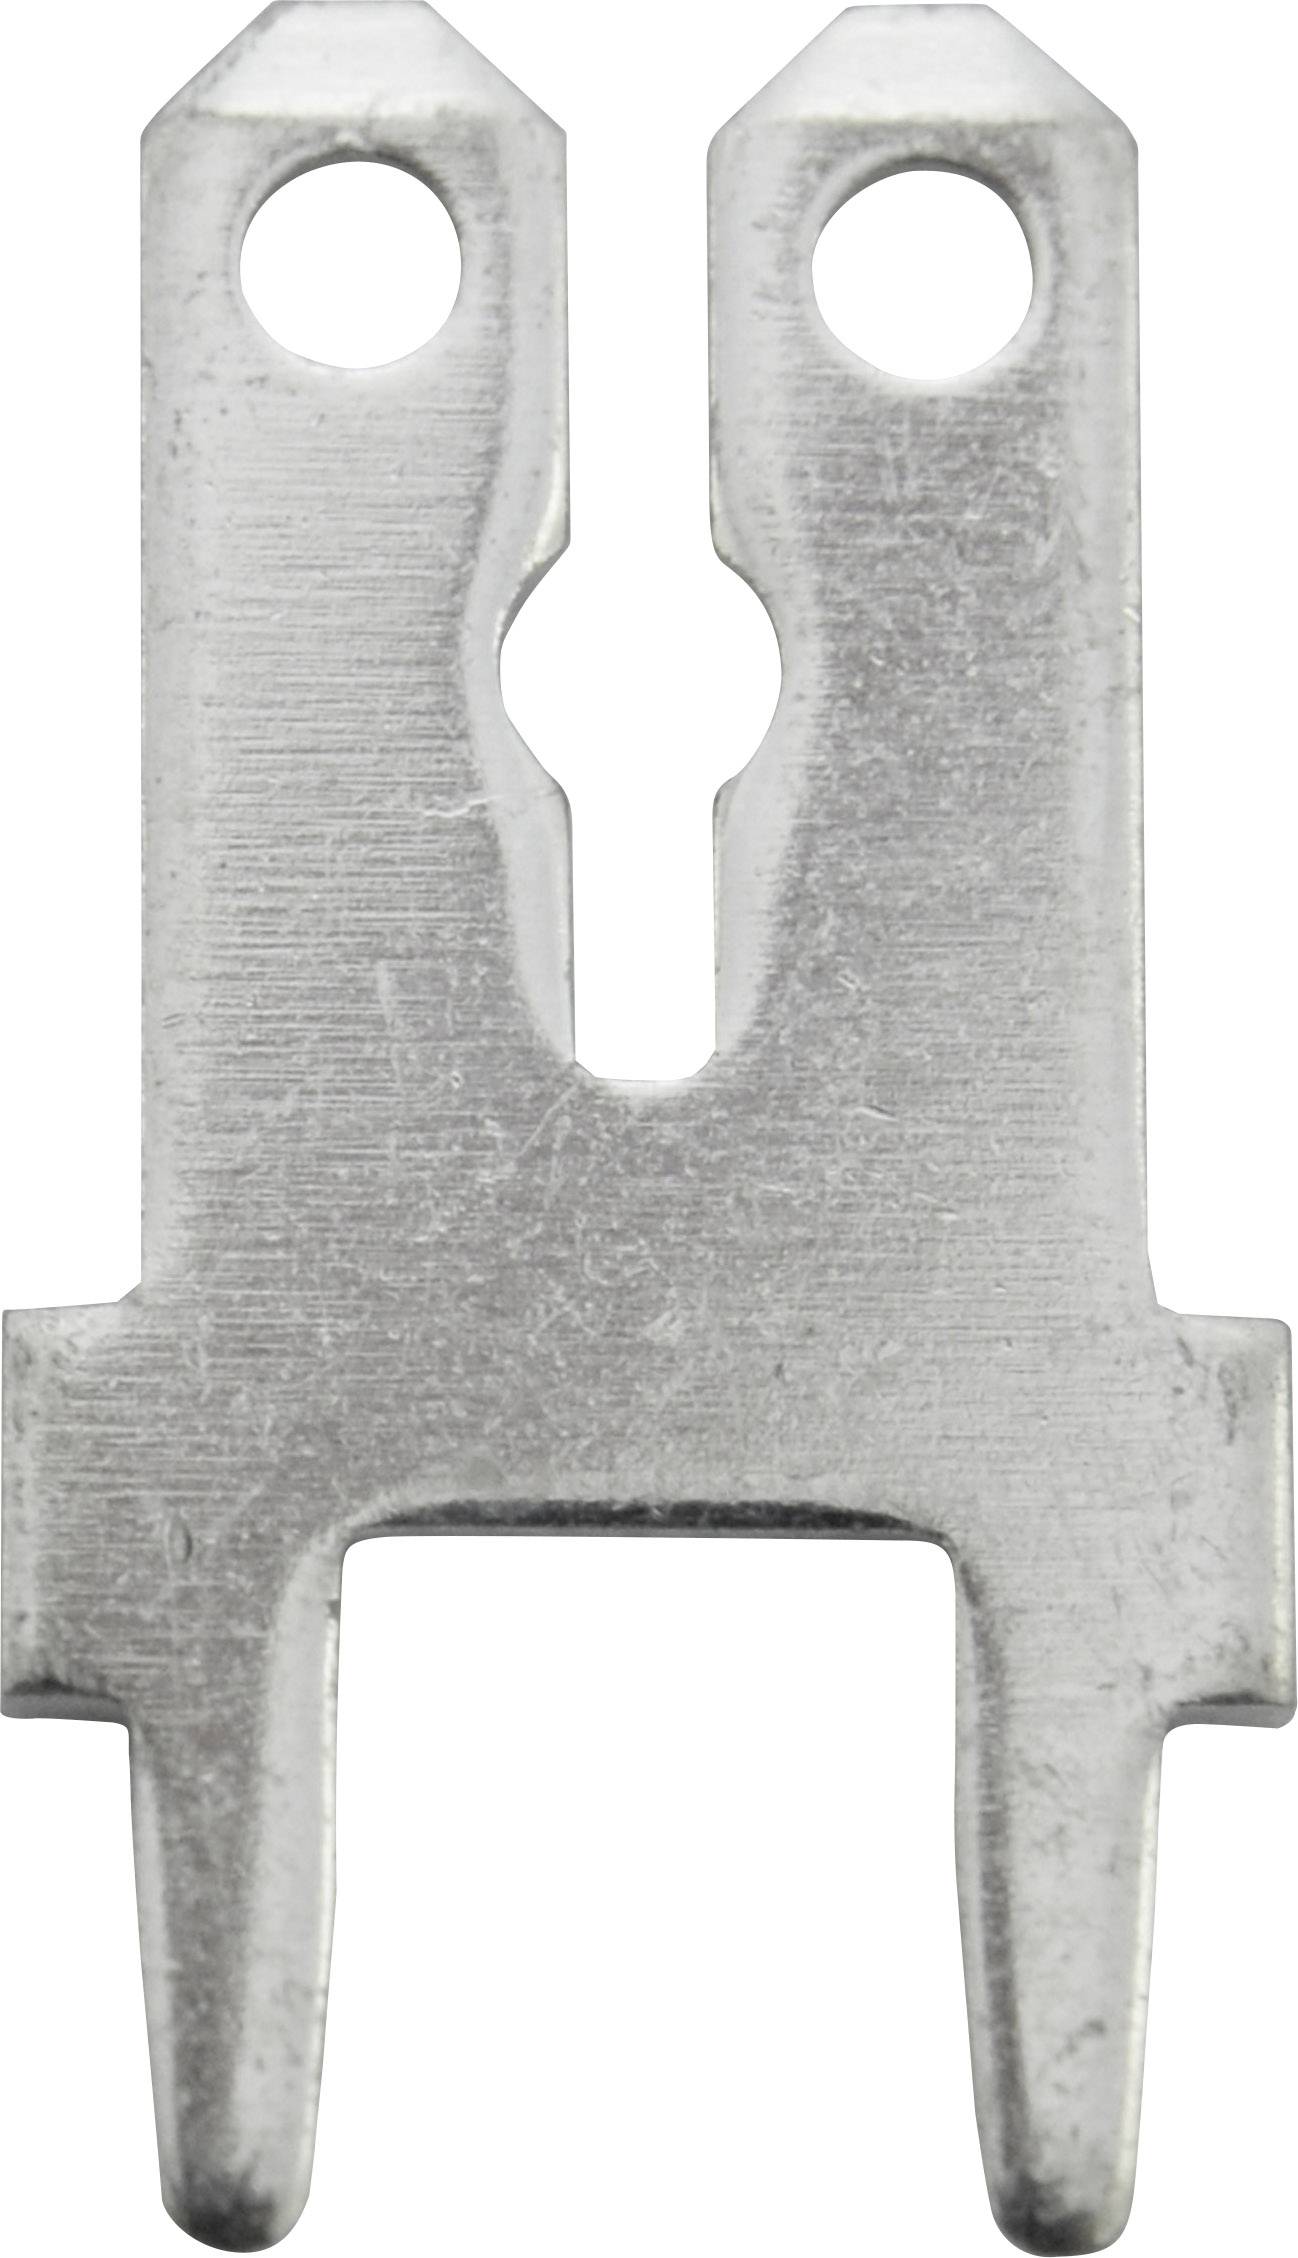 VOGT Steckzunge Steckbreite: 6.3 mm Steckdicke: 0.8 mm 180 ° Unisoliert Metall Vogt Verbindungstechn